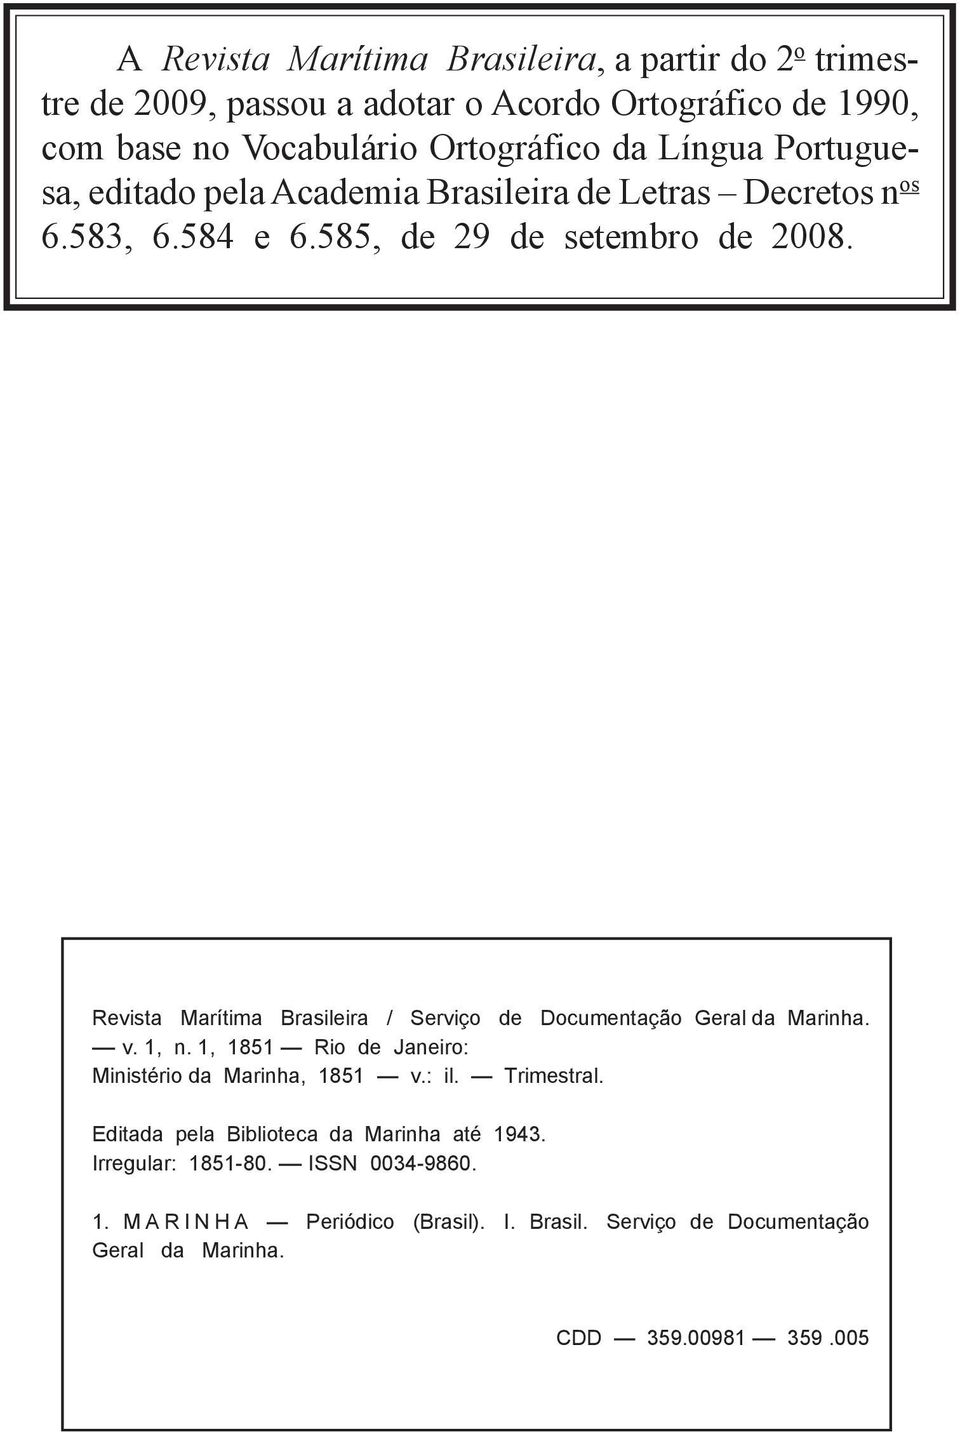 Revista Marítima Brasileira / Serviço de Documentação Geral da Marinha. v. 1, n. 1, 1851 Rio de Janeiro: Ministério da Marinha, 1851 v.: il. Trimestral.